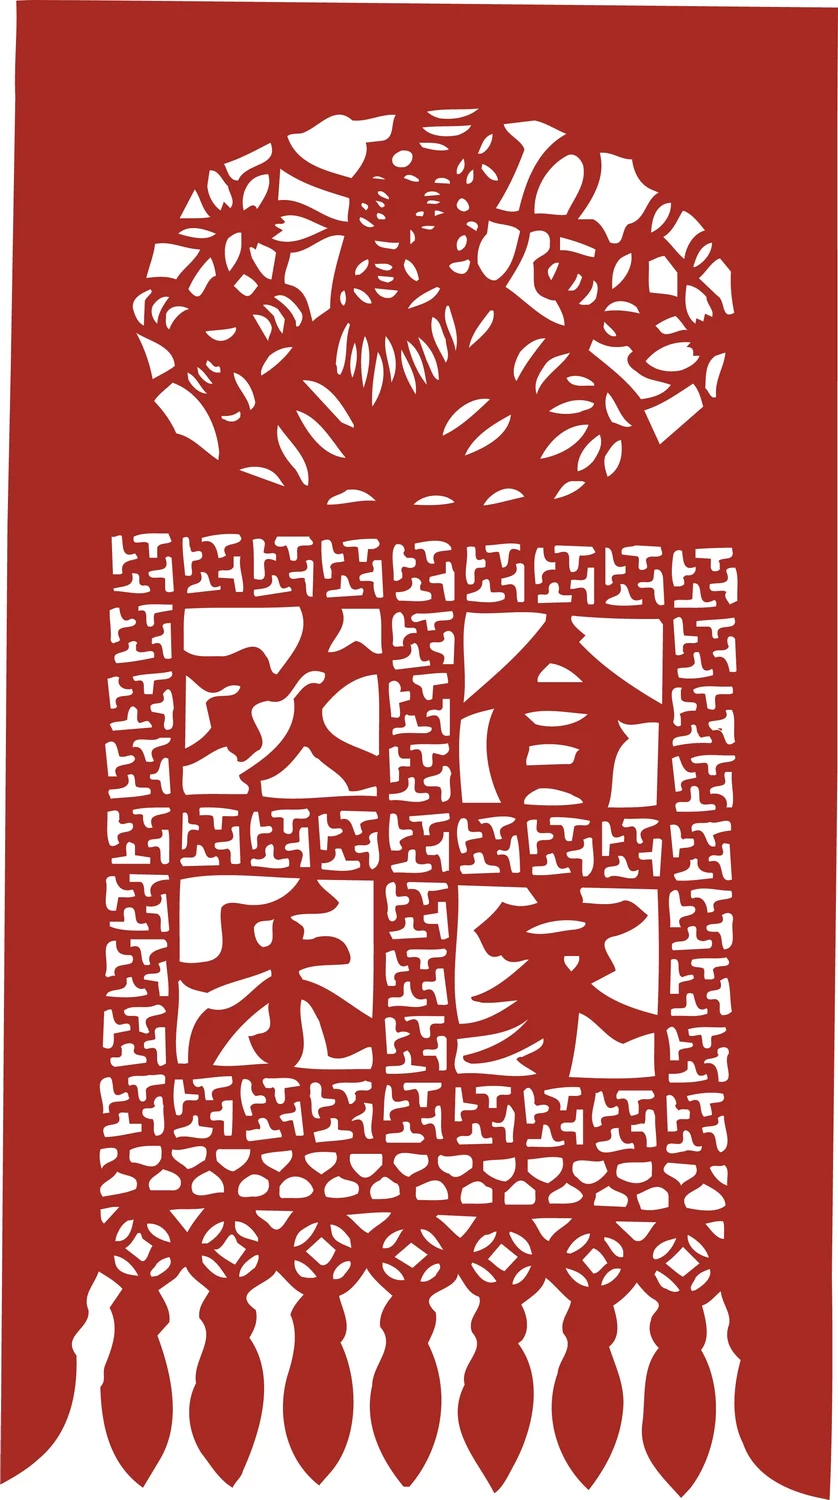 中国风中式传统喜庆民俗人物动物窗花剪纸插画边框AI矢量PNG素材【1903】